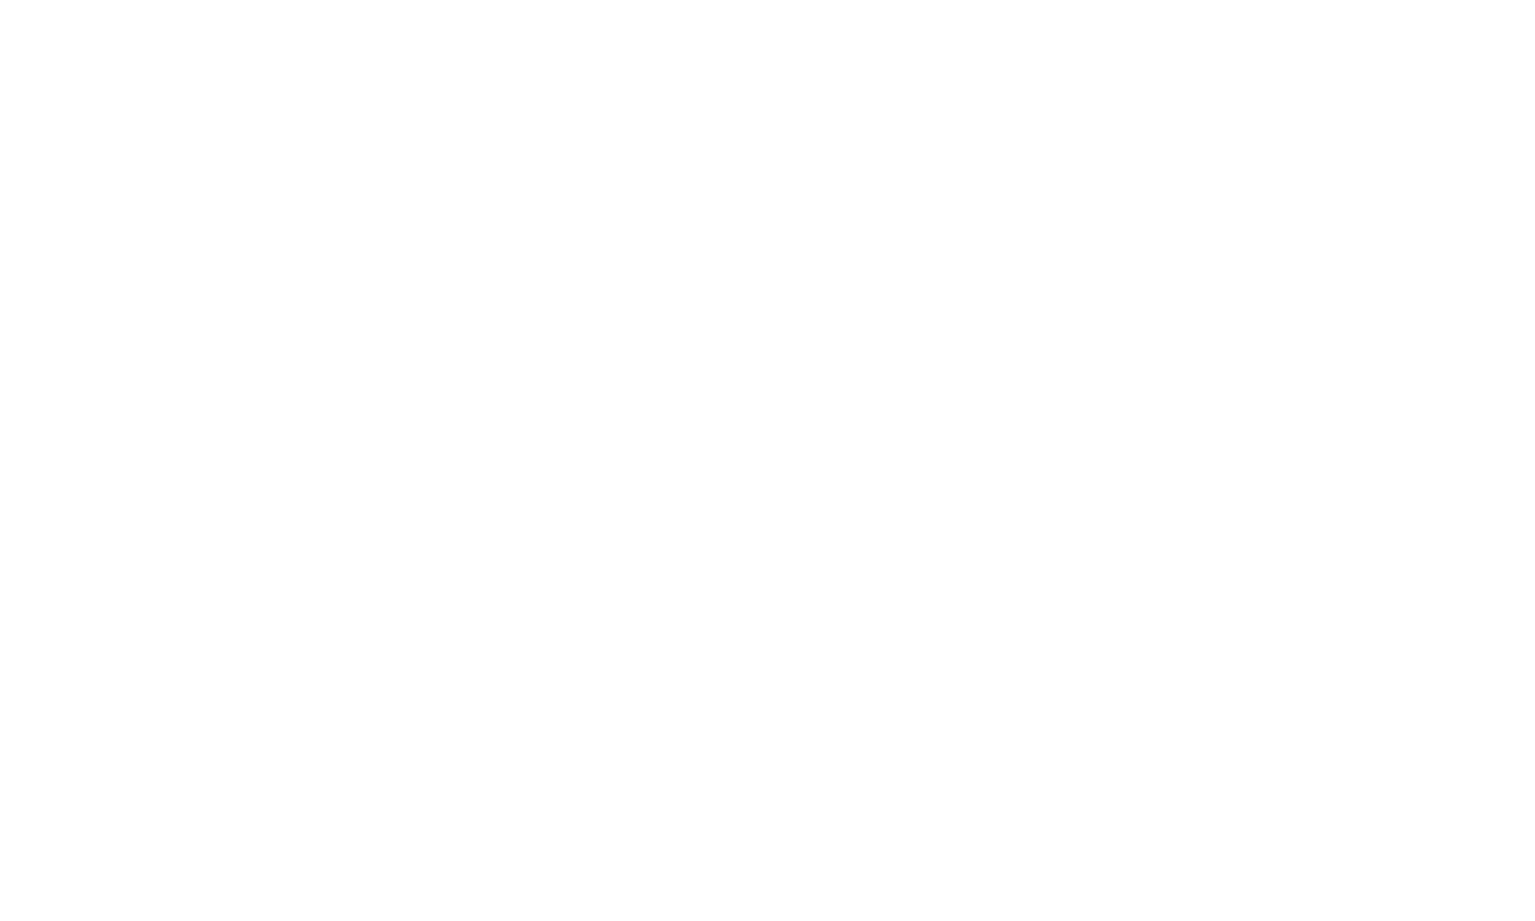 Prestige Auto Storage